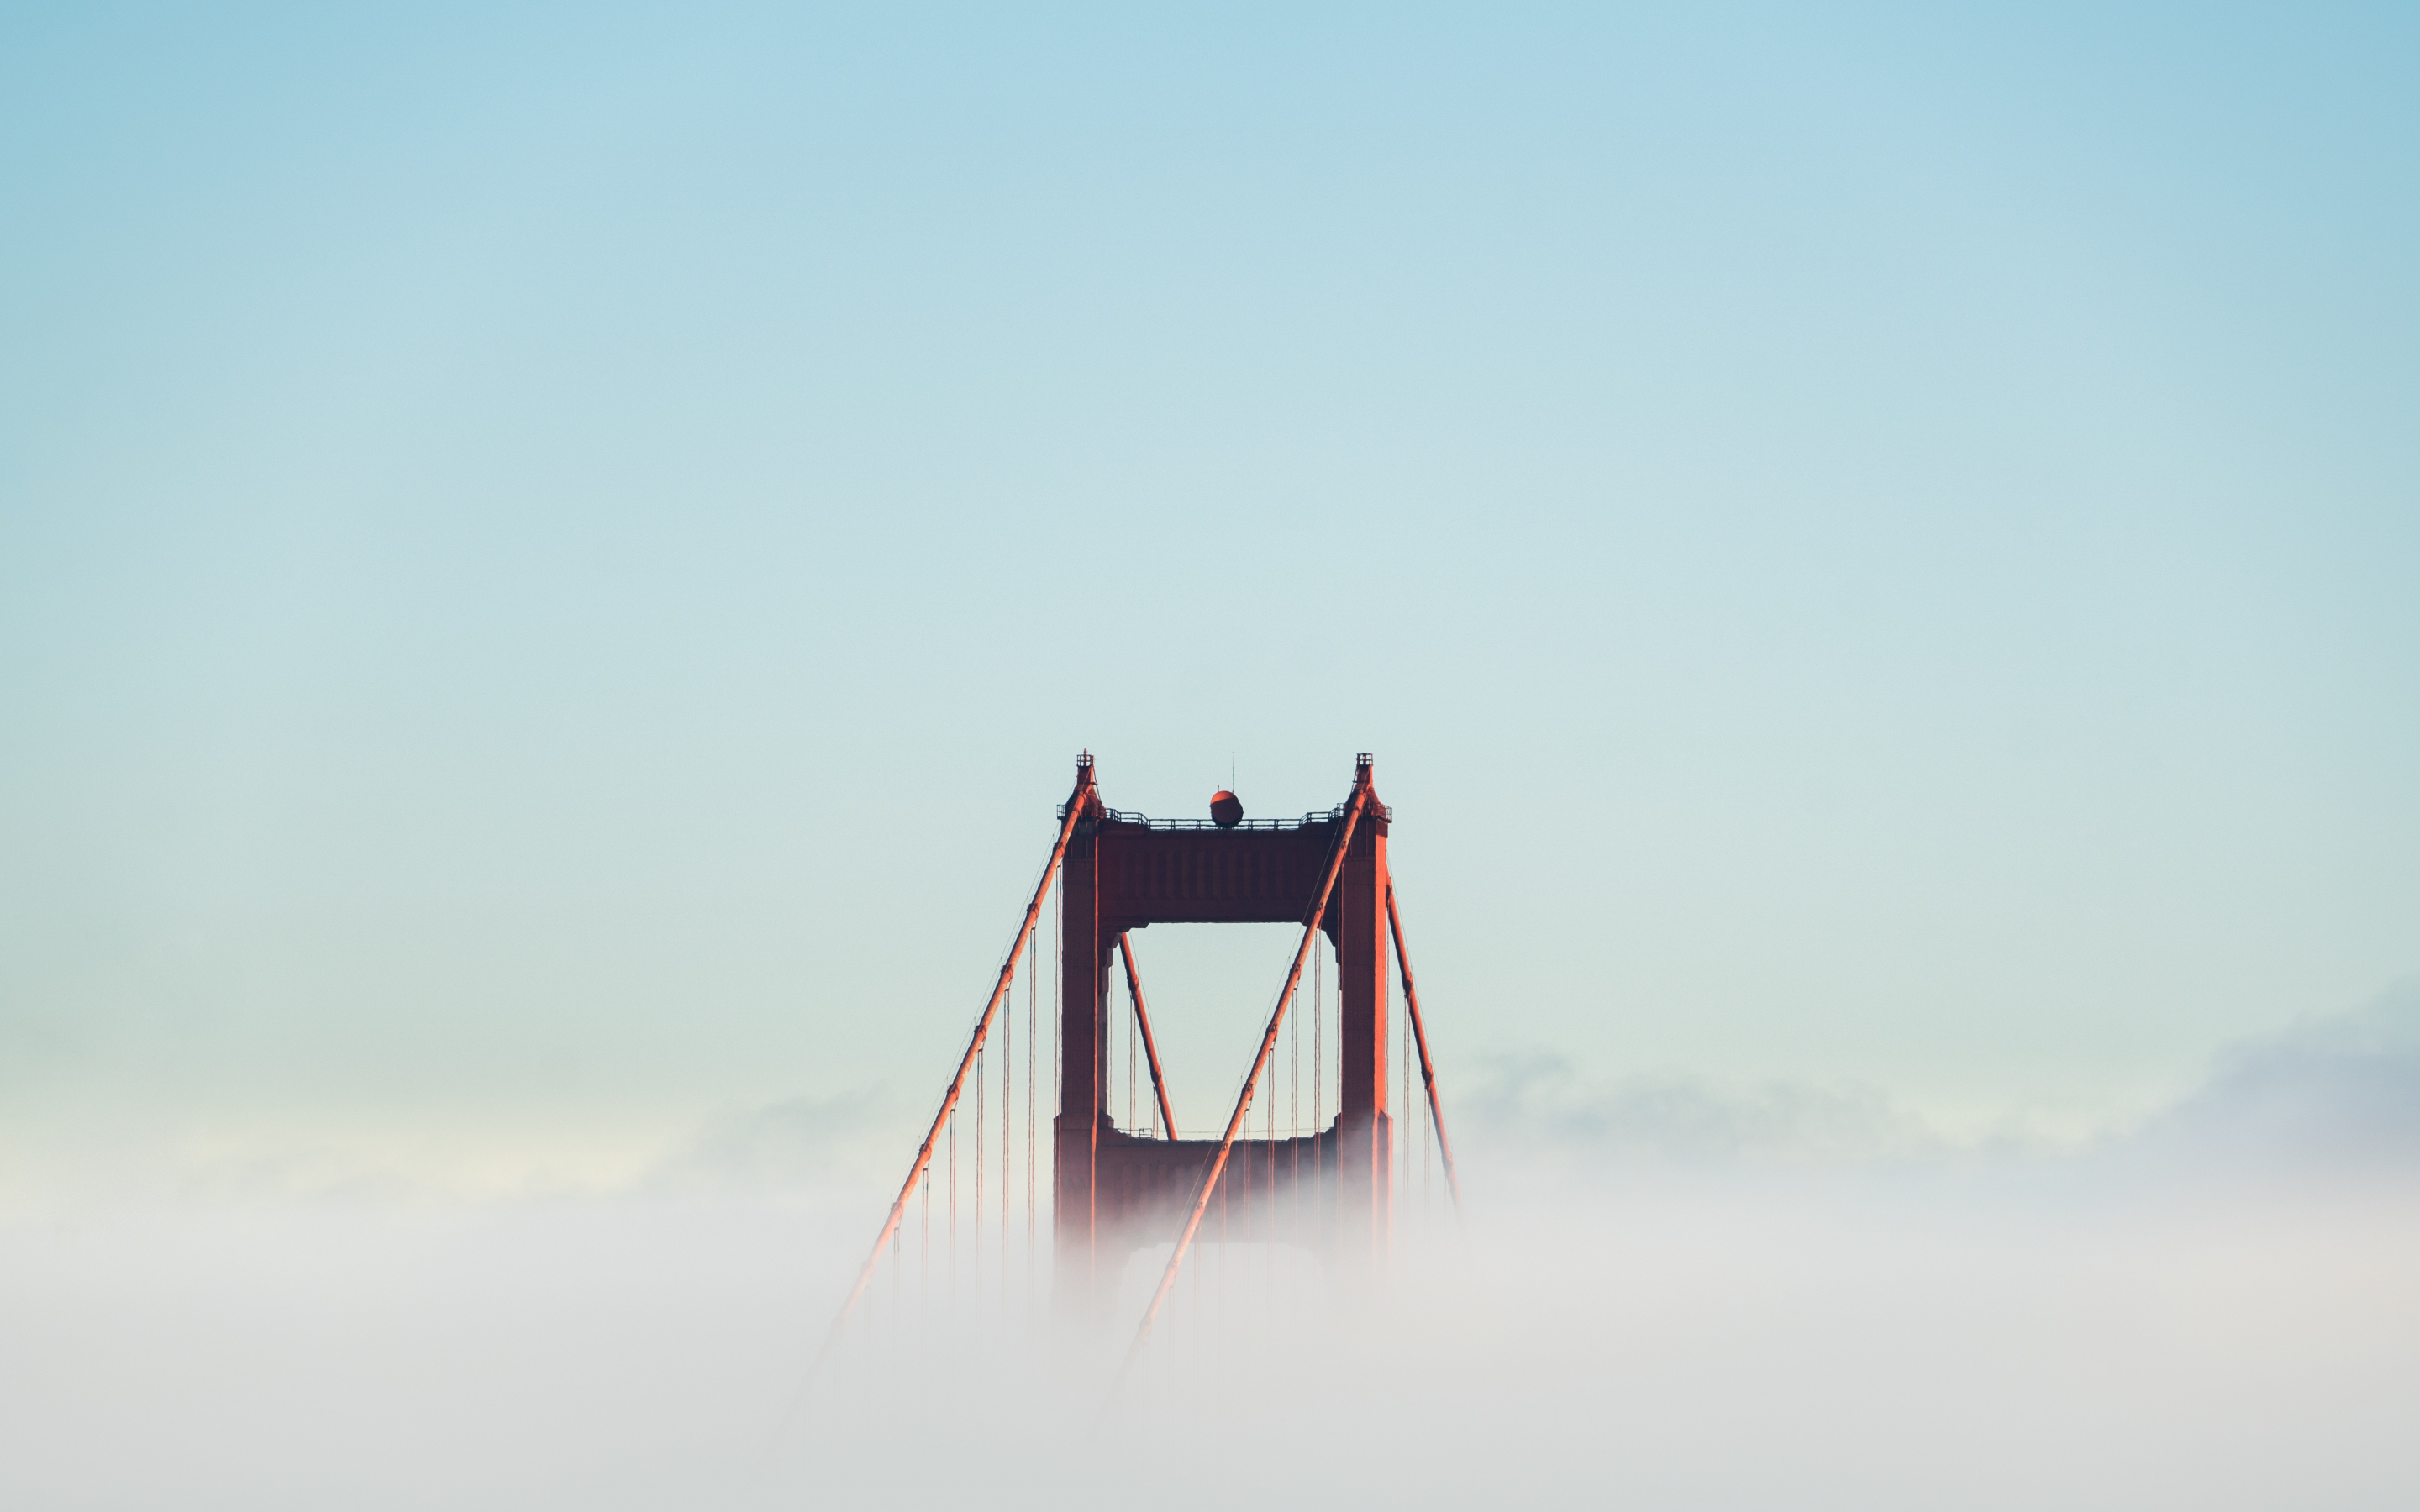 Golden Gate Bridge, fog, bridge, 2880x1800 wallpaper